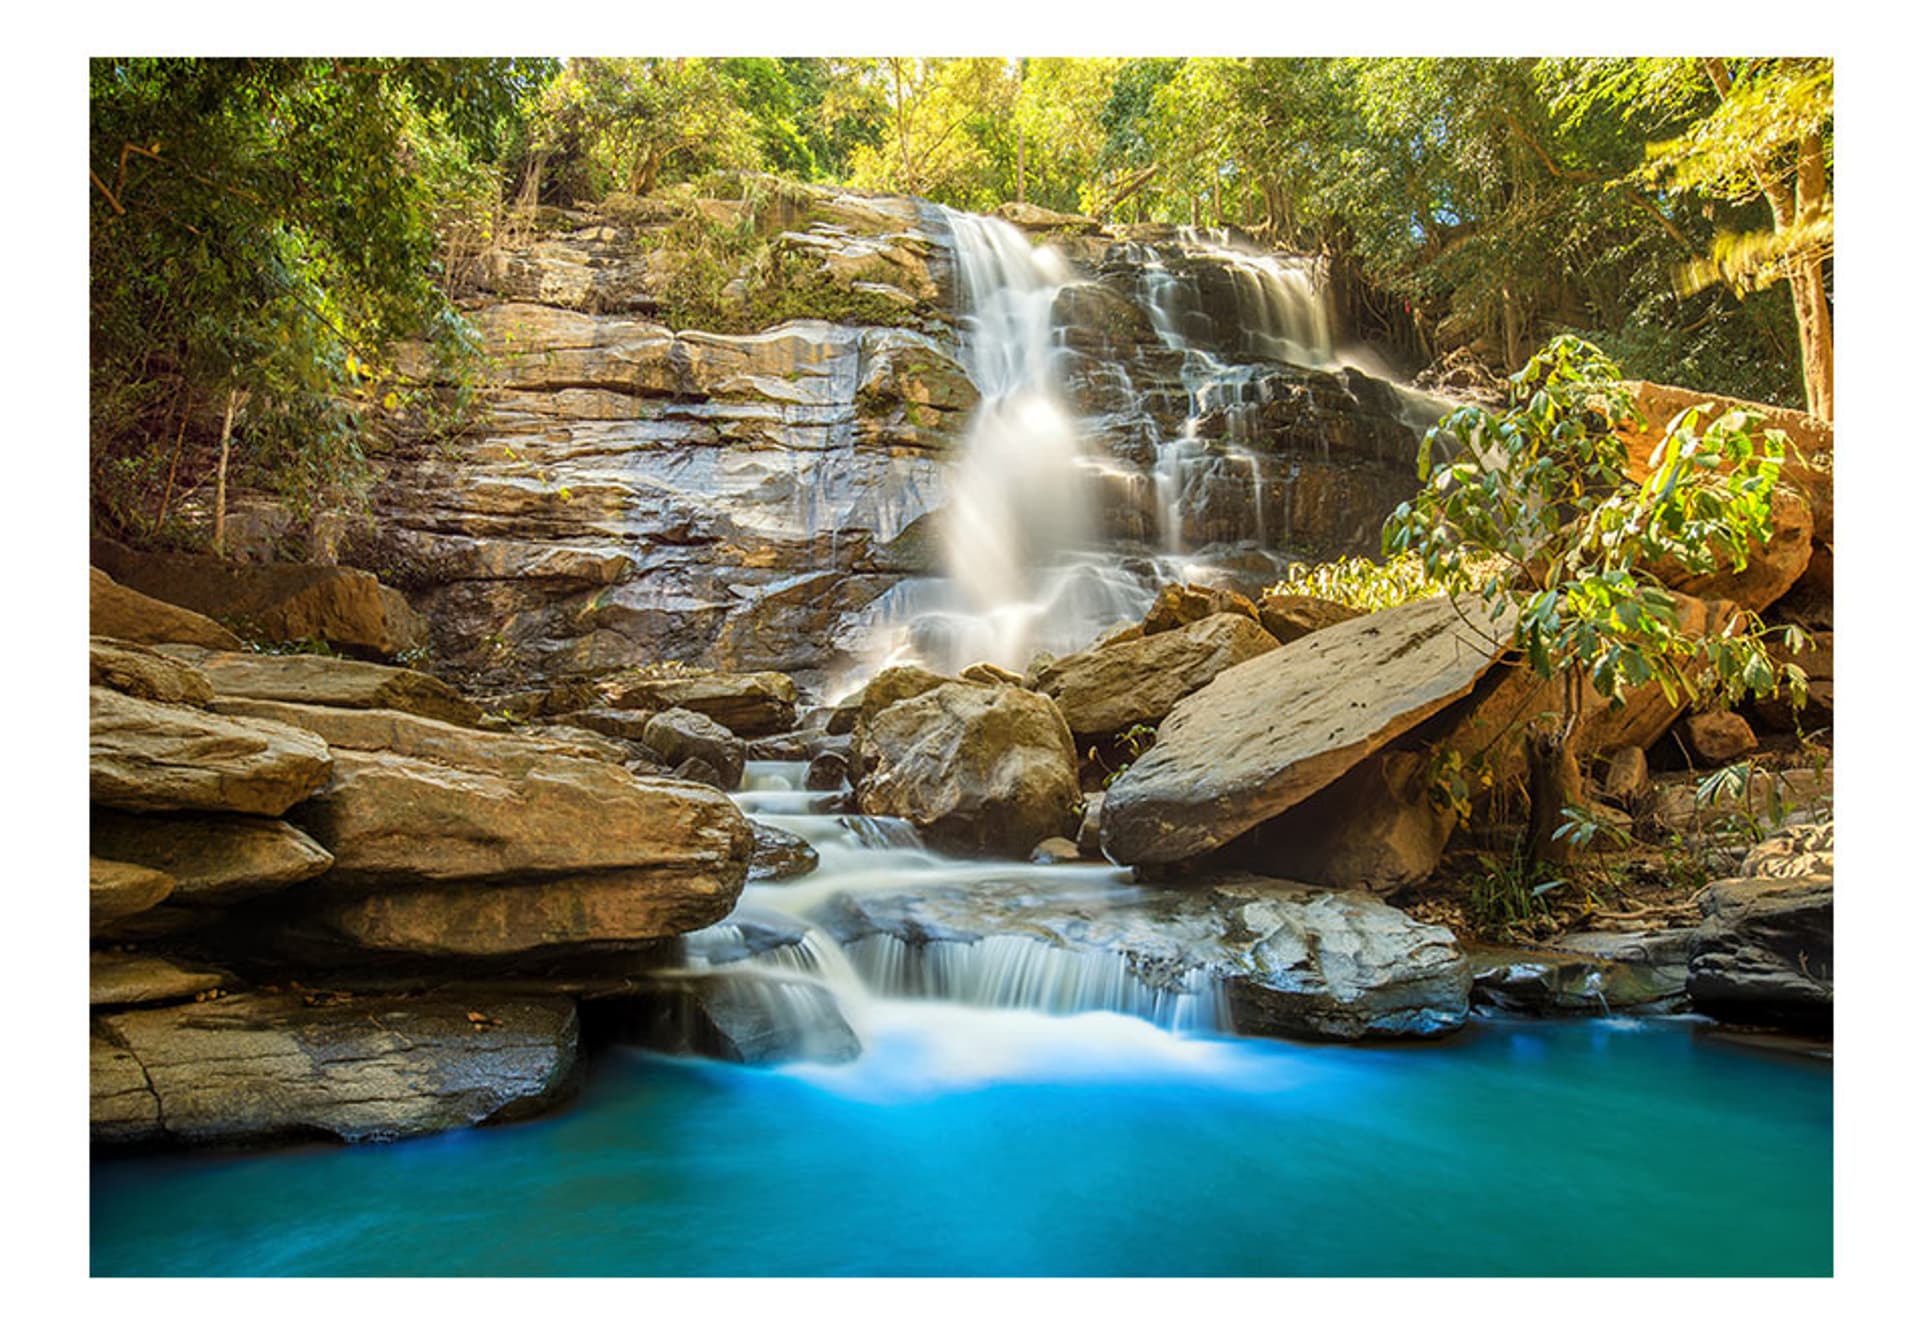 

Fototapeta samoprzylepna - Wodospad w Chiang Mai, Tajlandia (rozmiar 441x315)